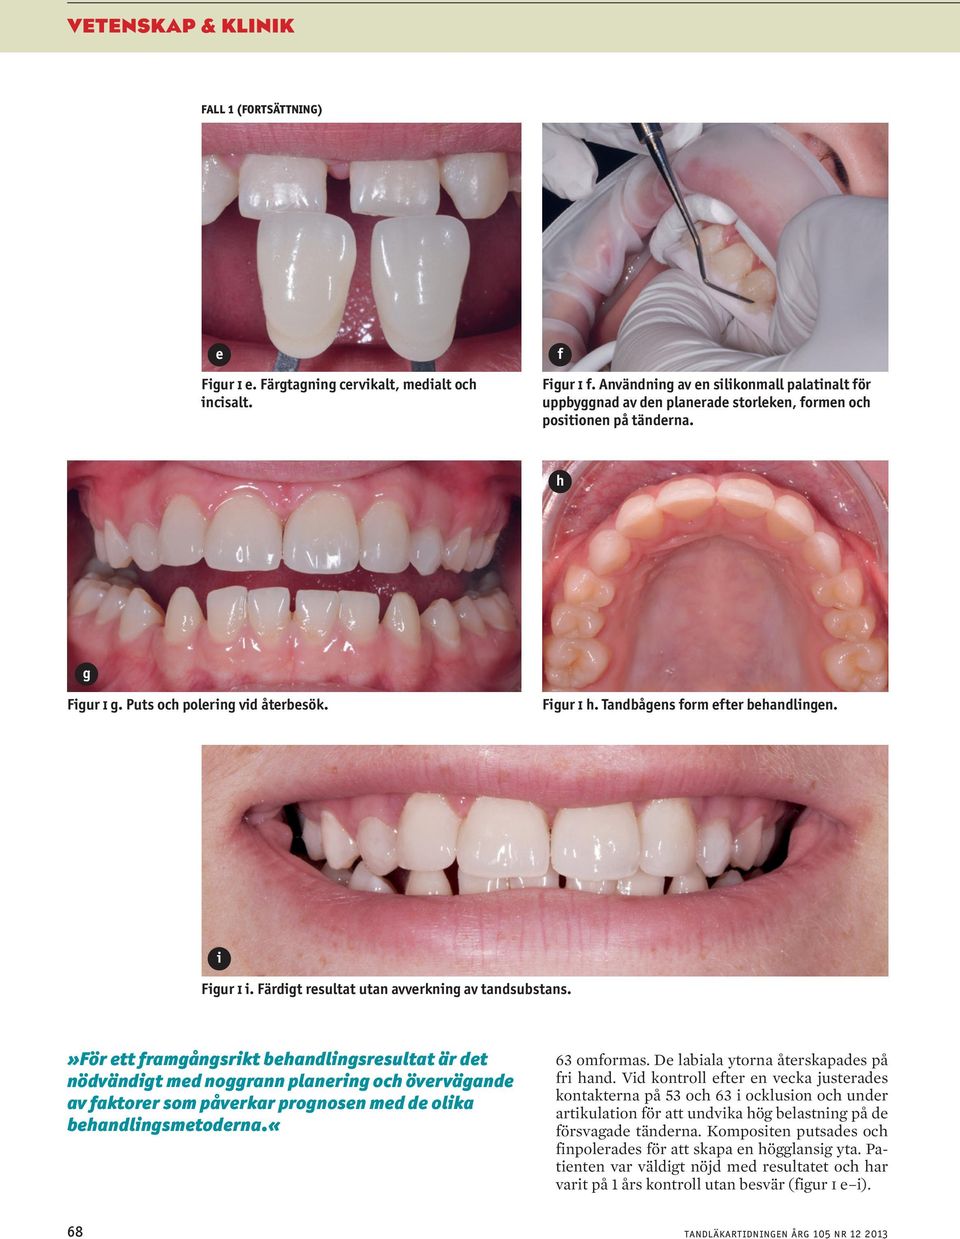 Tandbågens form efter behandlingen. i Figur i i. Färdigt resultat utan avverkning av tandsubstans.